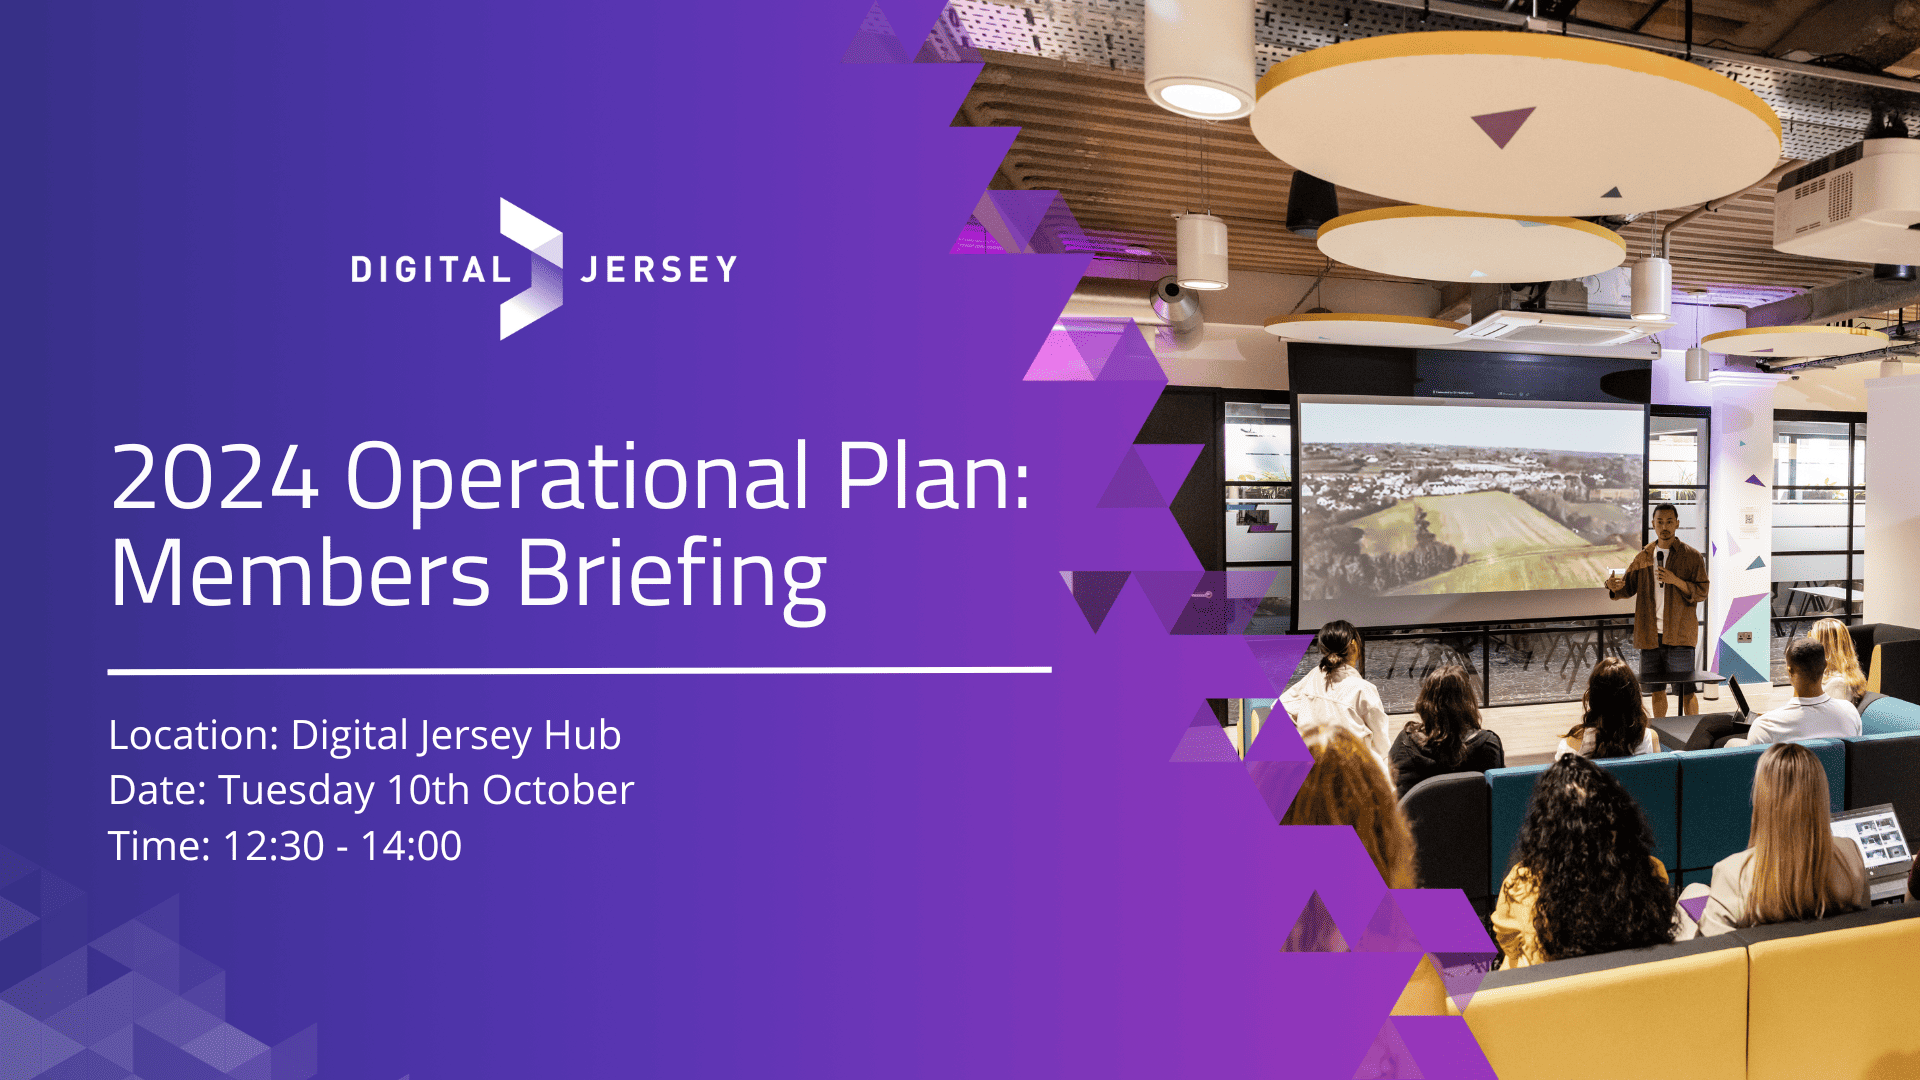 Digital Jersey 2024 Operational Plan: Members Briefing